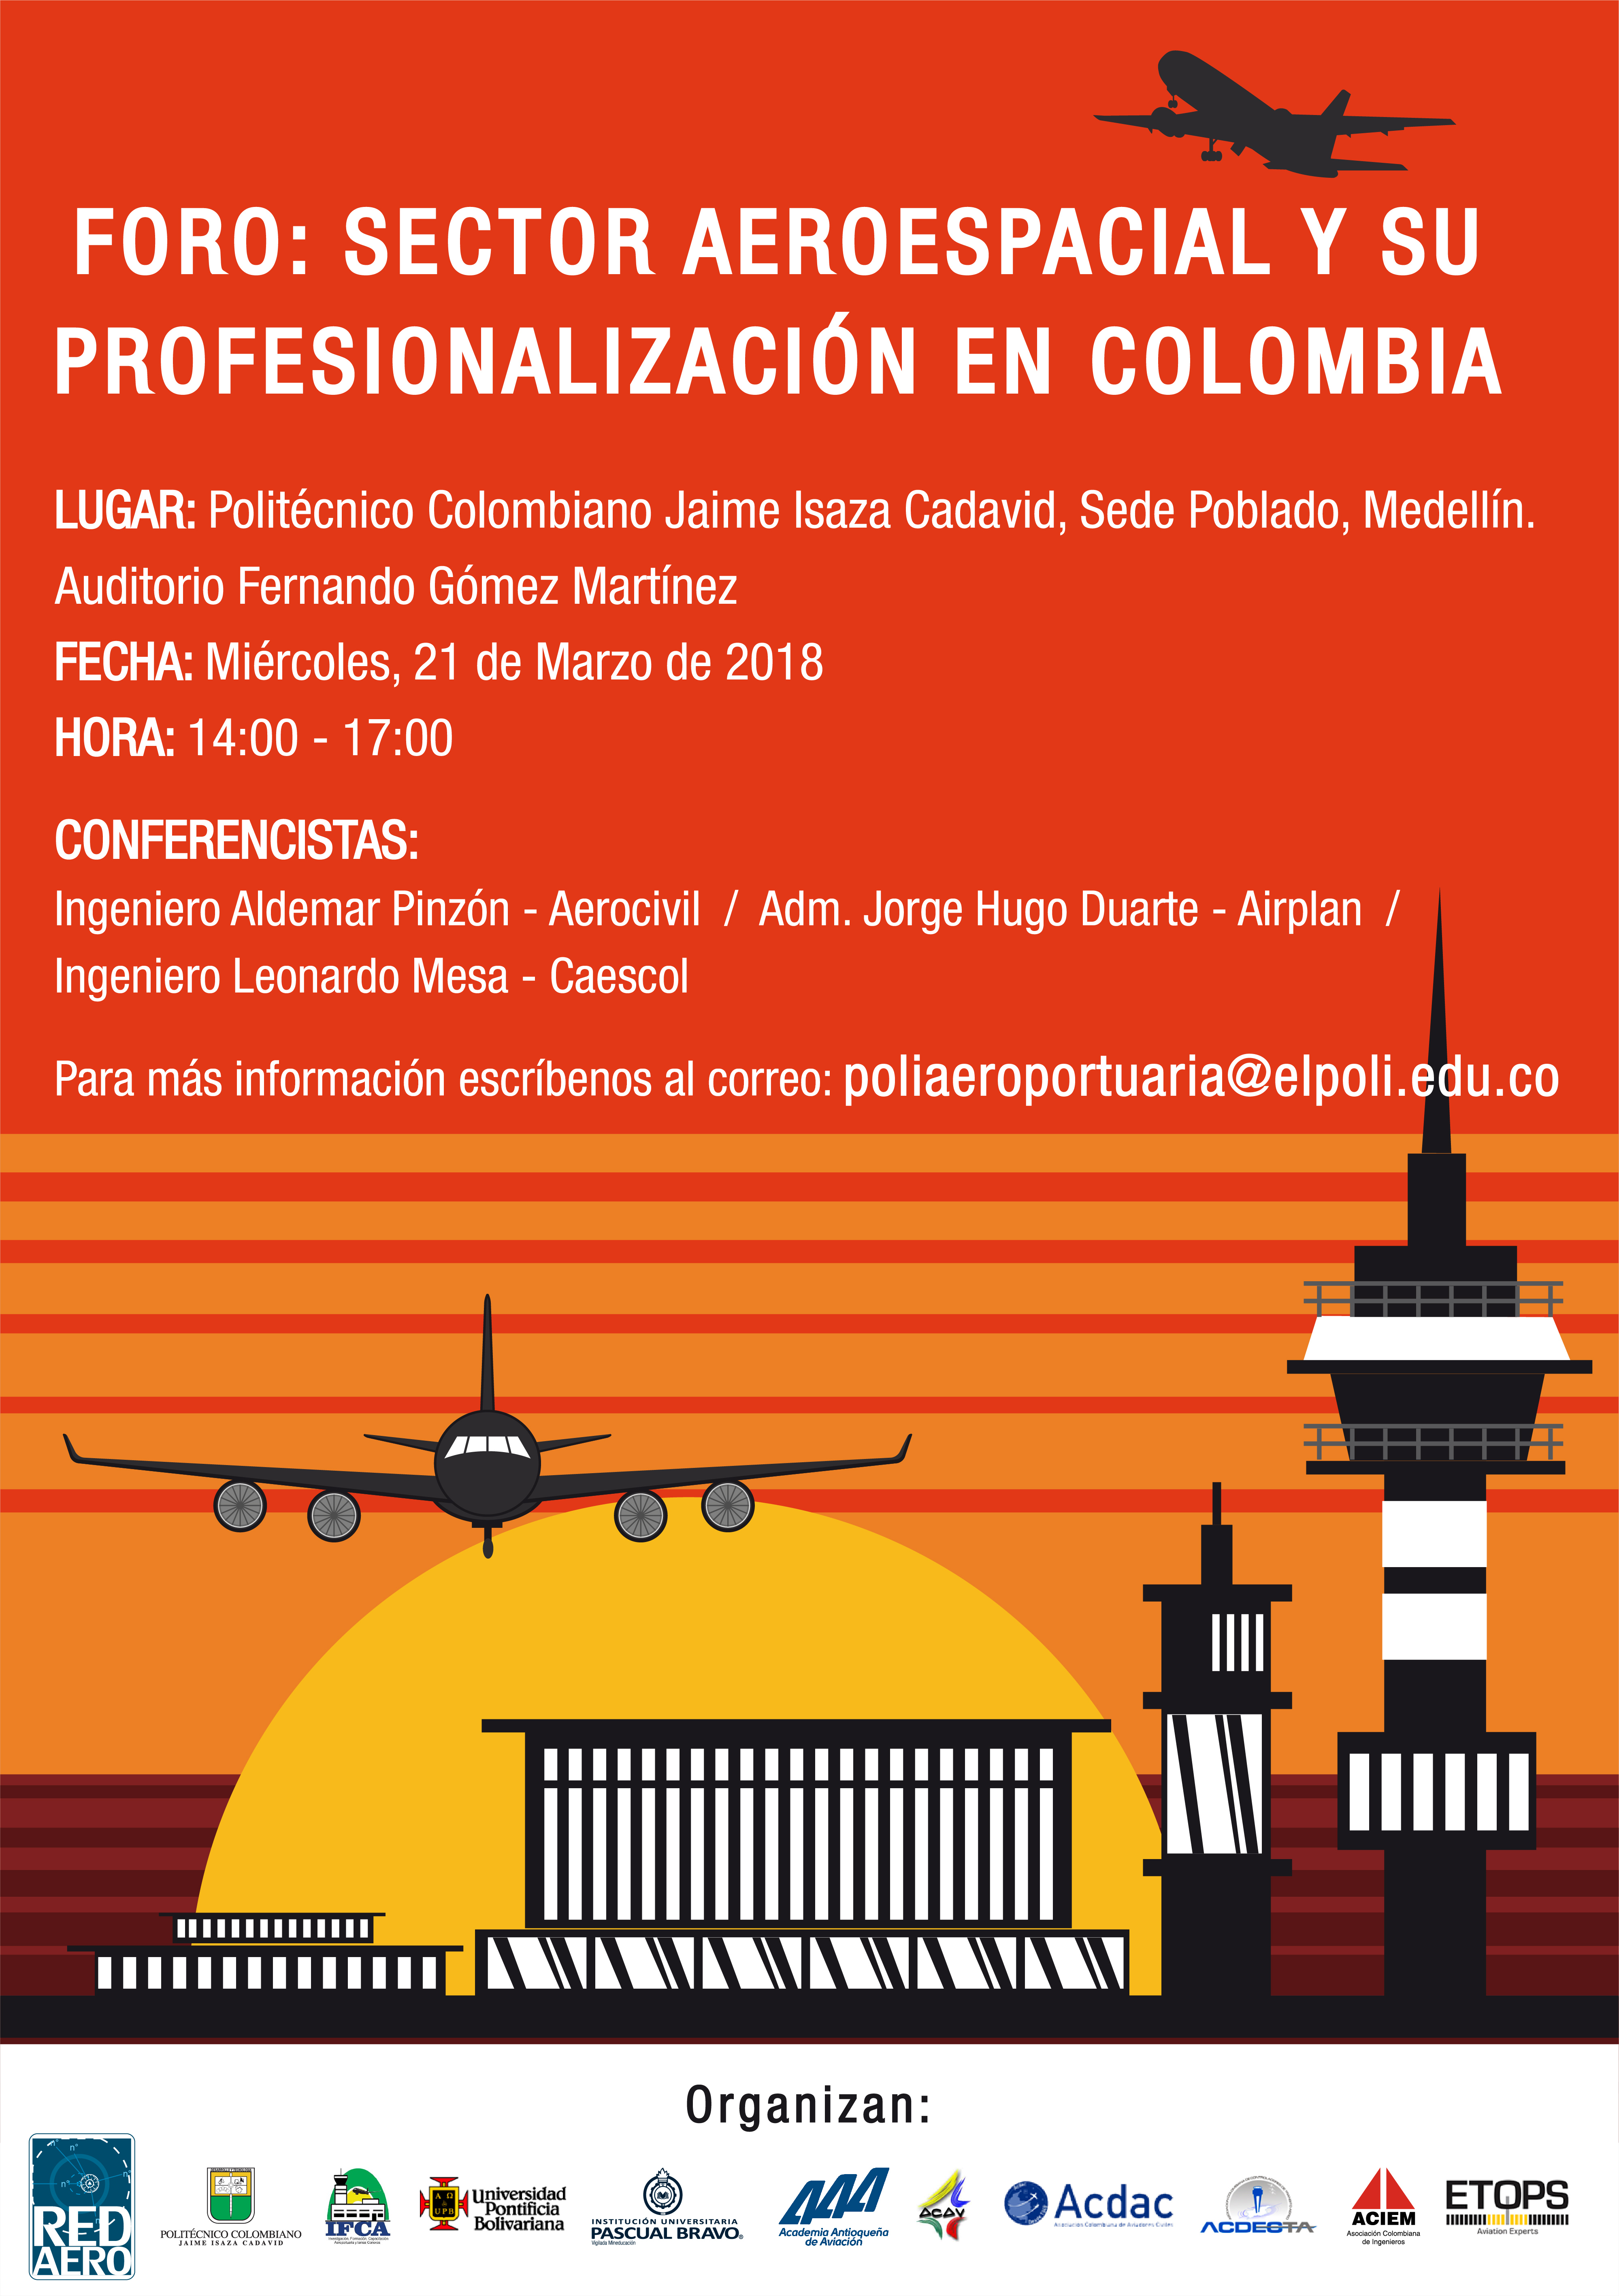 Foro sector aeroespacial y su profesionalización en Colombia